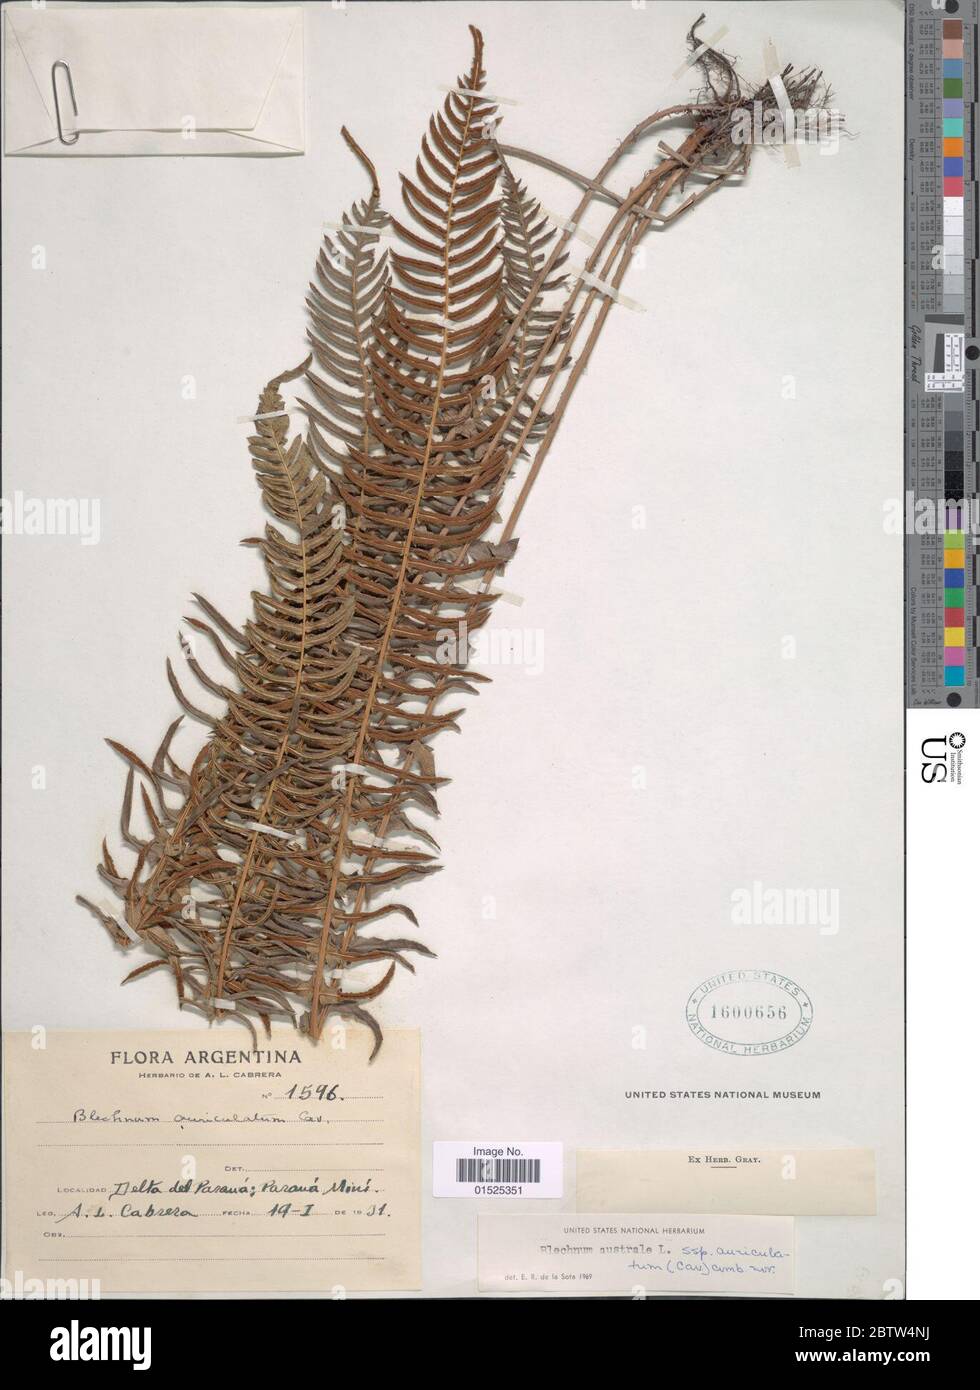 Blechnum australe subsp auriculatum Cav de la Sota. Stock Photo